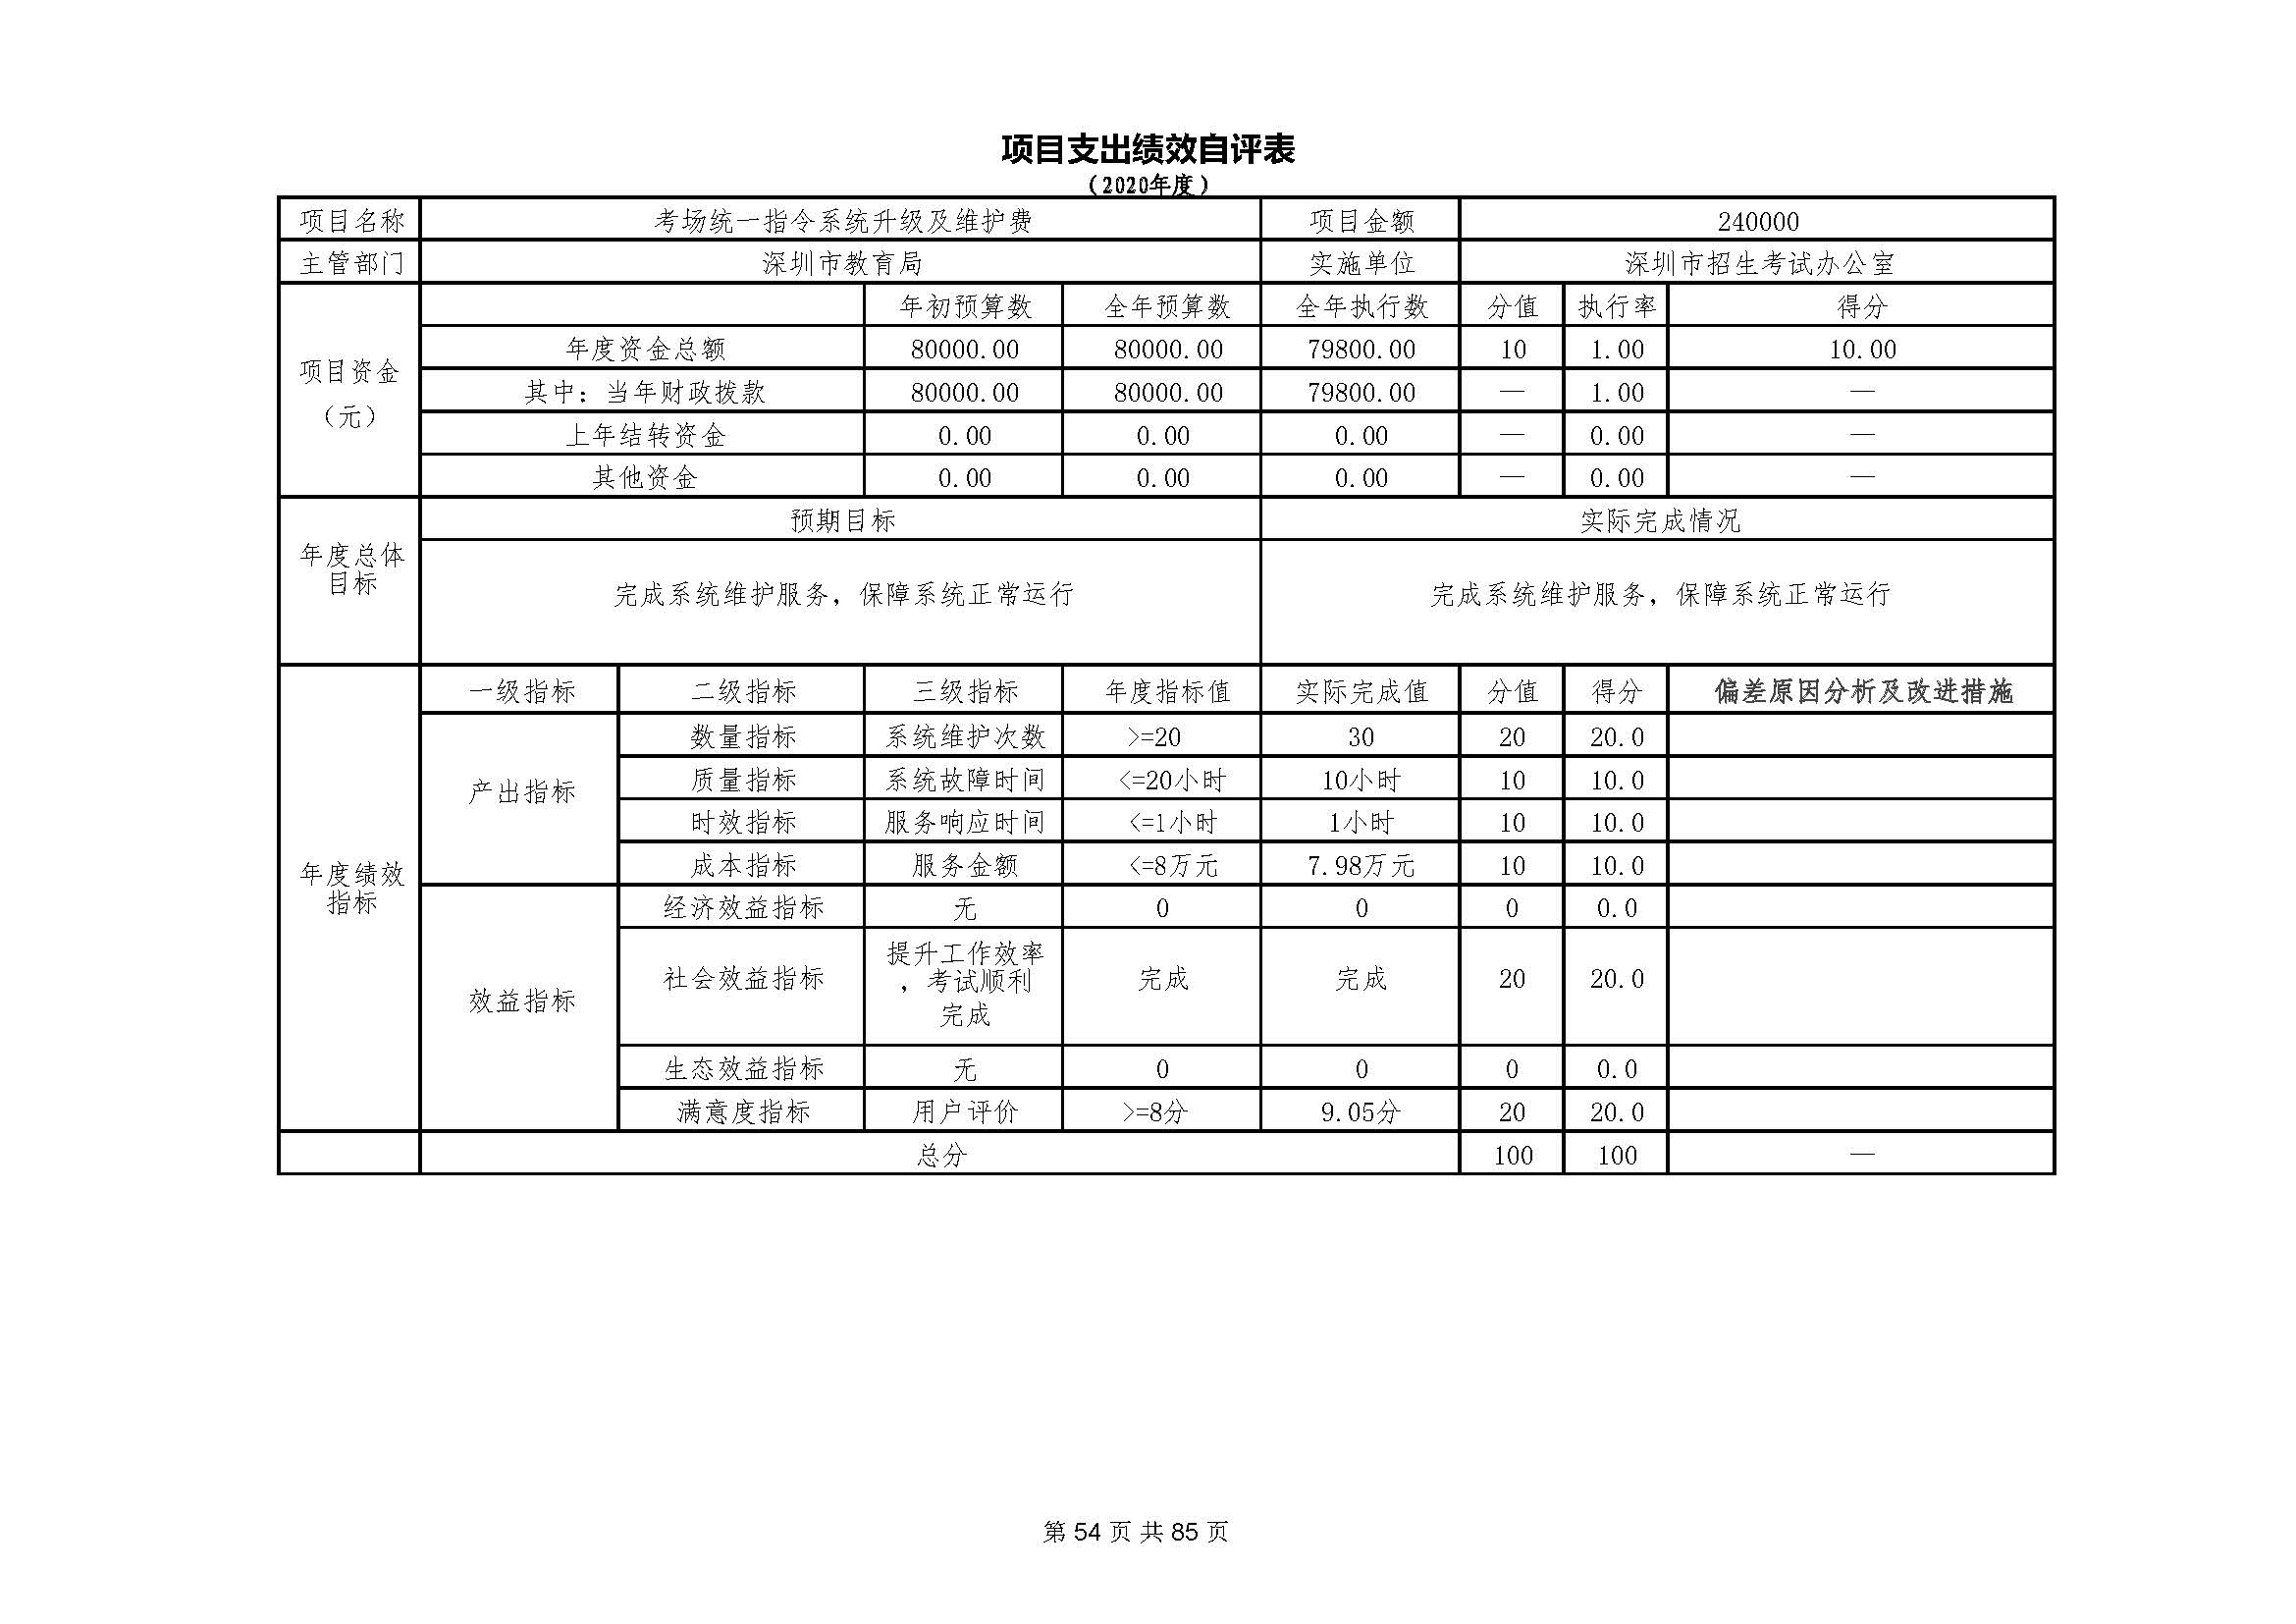 深圳市招生考试办公室2020年度部门决算_页面_55.jpg